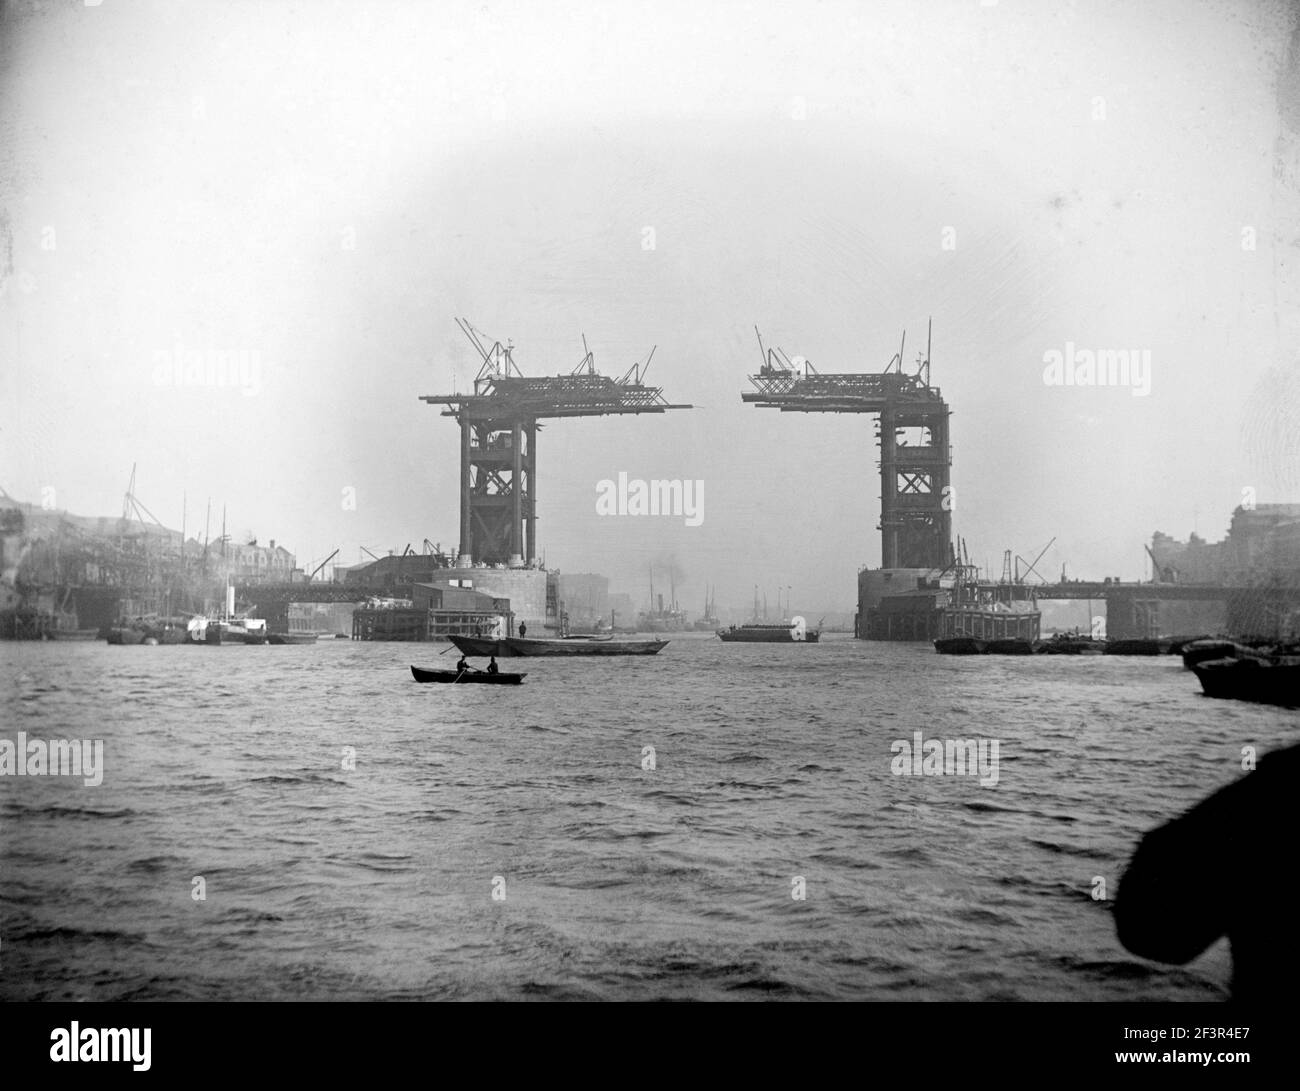 TOWER BRIDGE, London. Die Brücke wird um 1889 gebaut. Dieses Bild wurde von der Themse mit Schifffahrt im Vordergrund aufgenommen. Conru Stockfoto